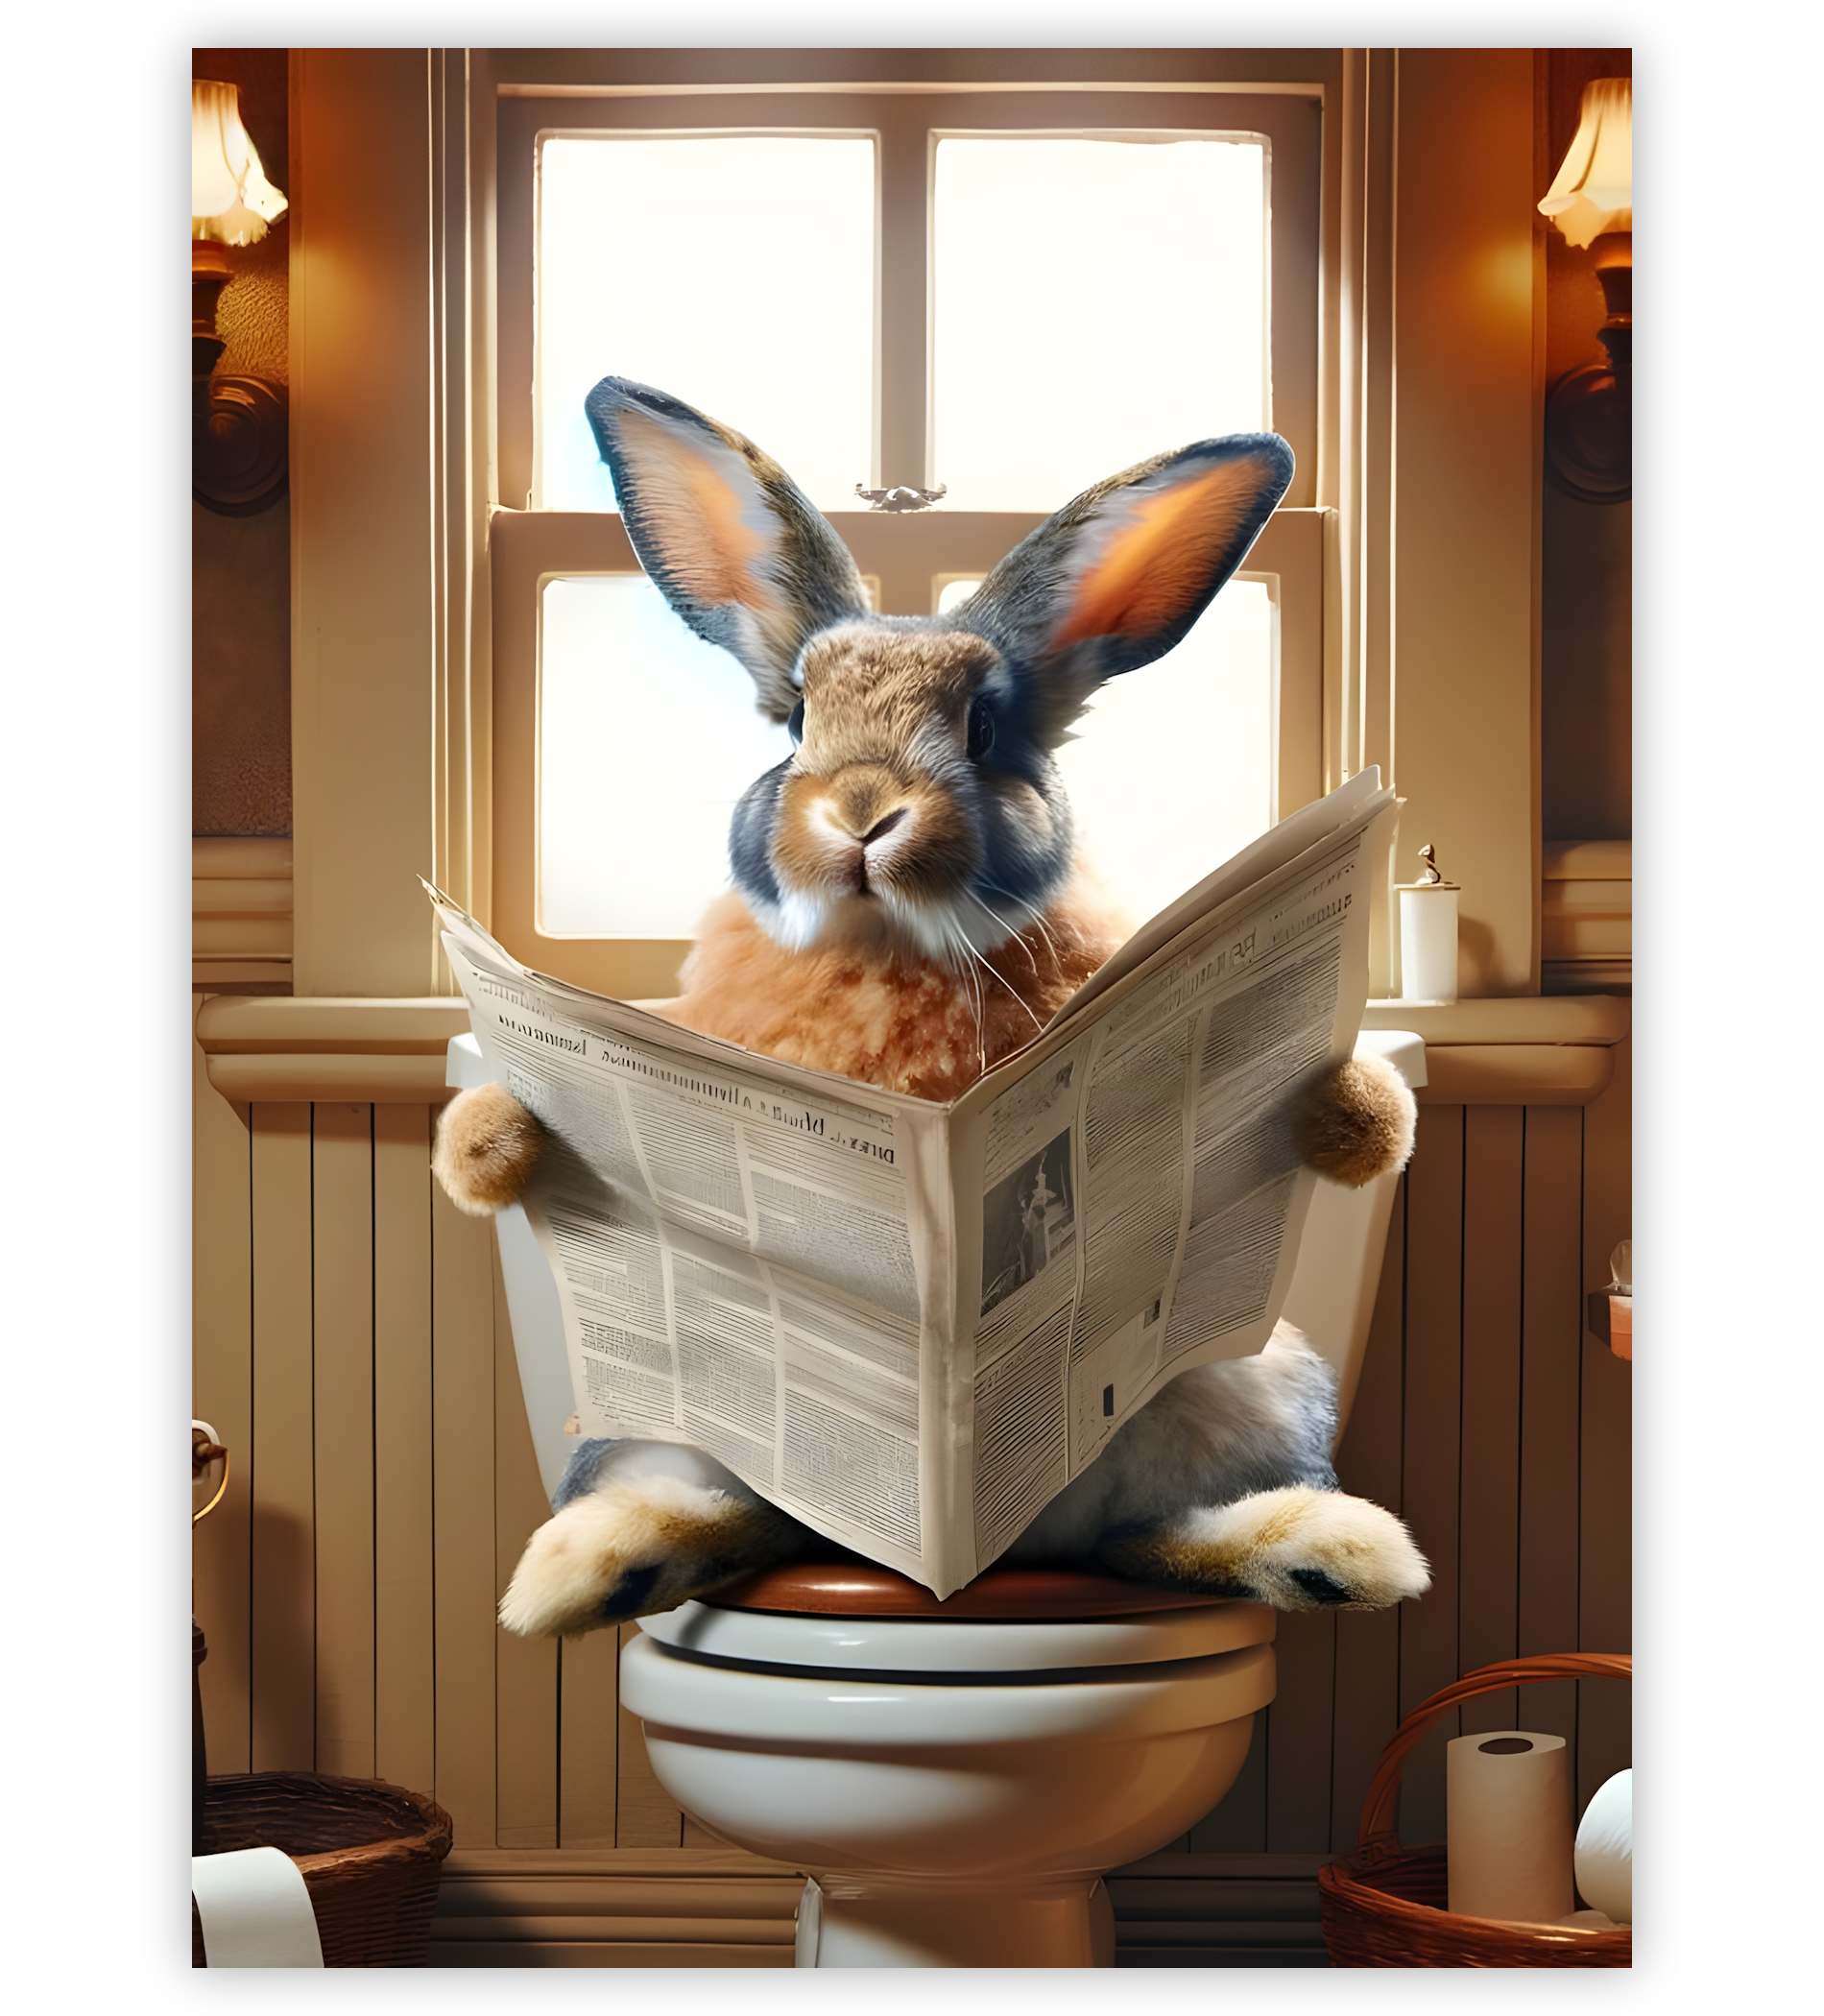 Poster, Wandbild von Kaninchen auf Toilette